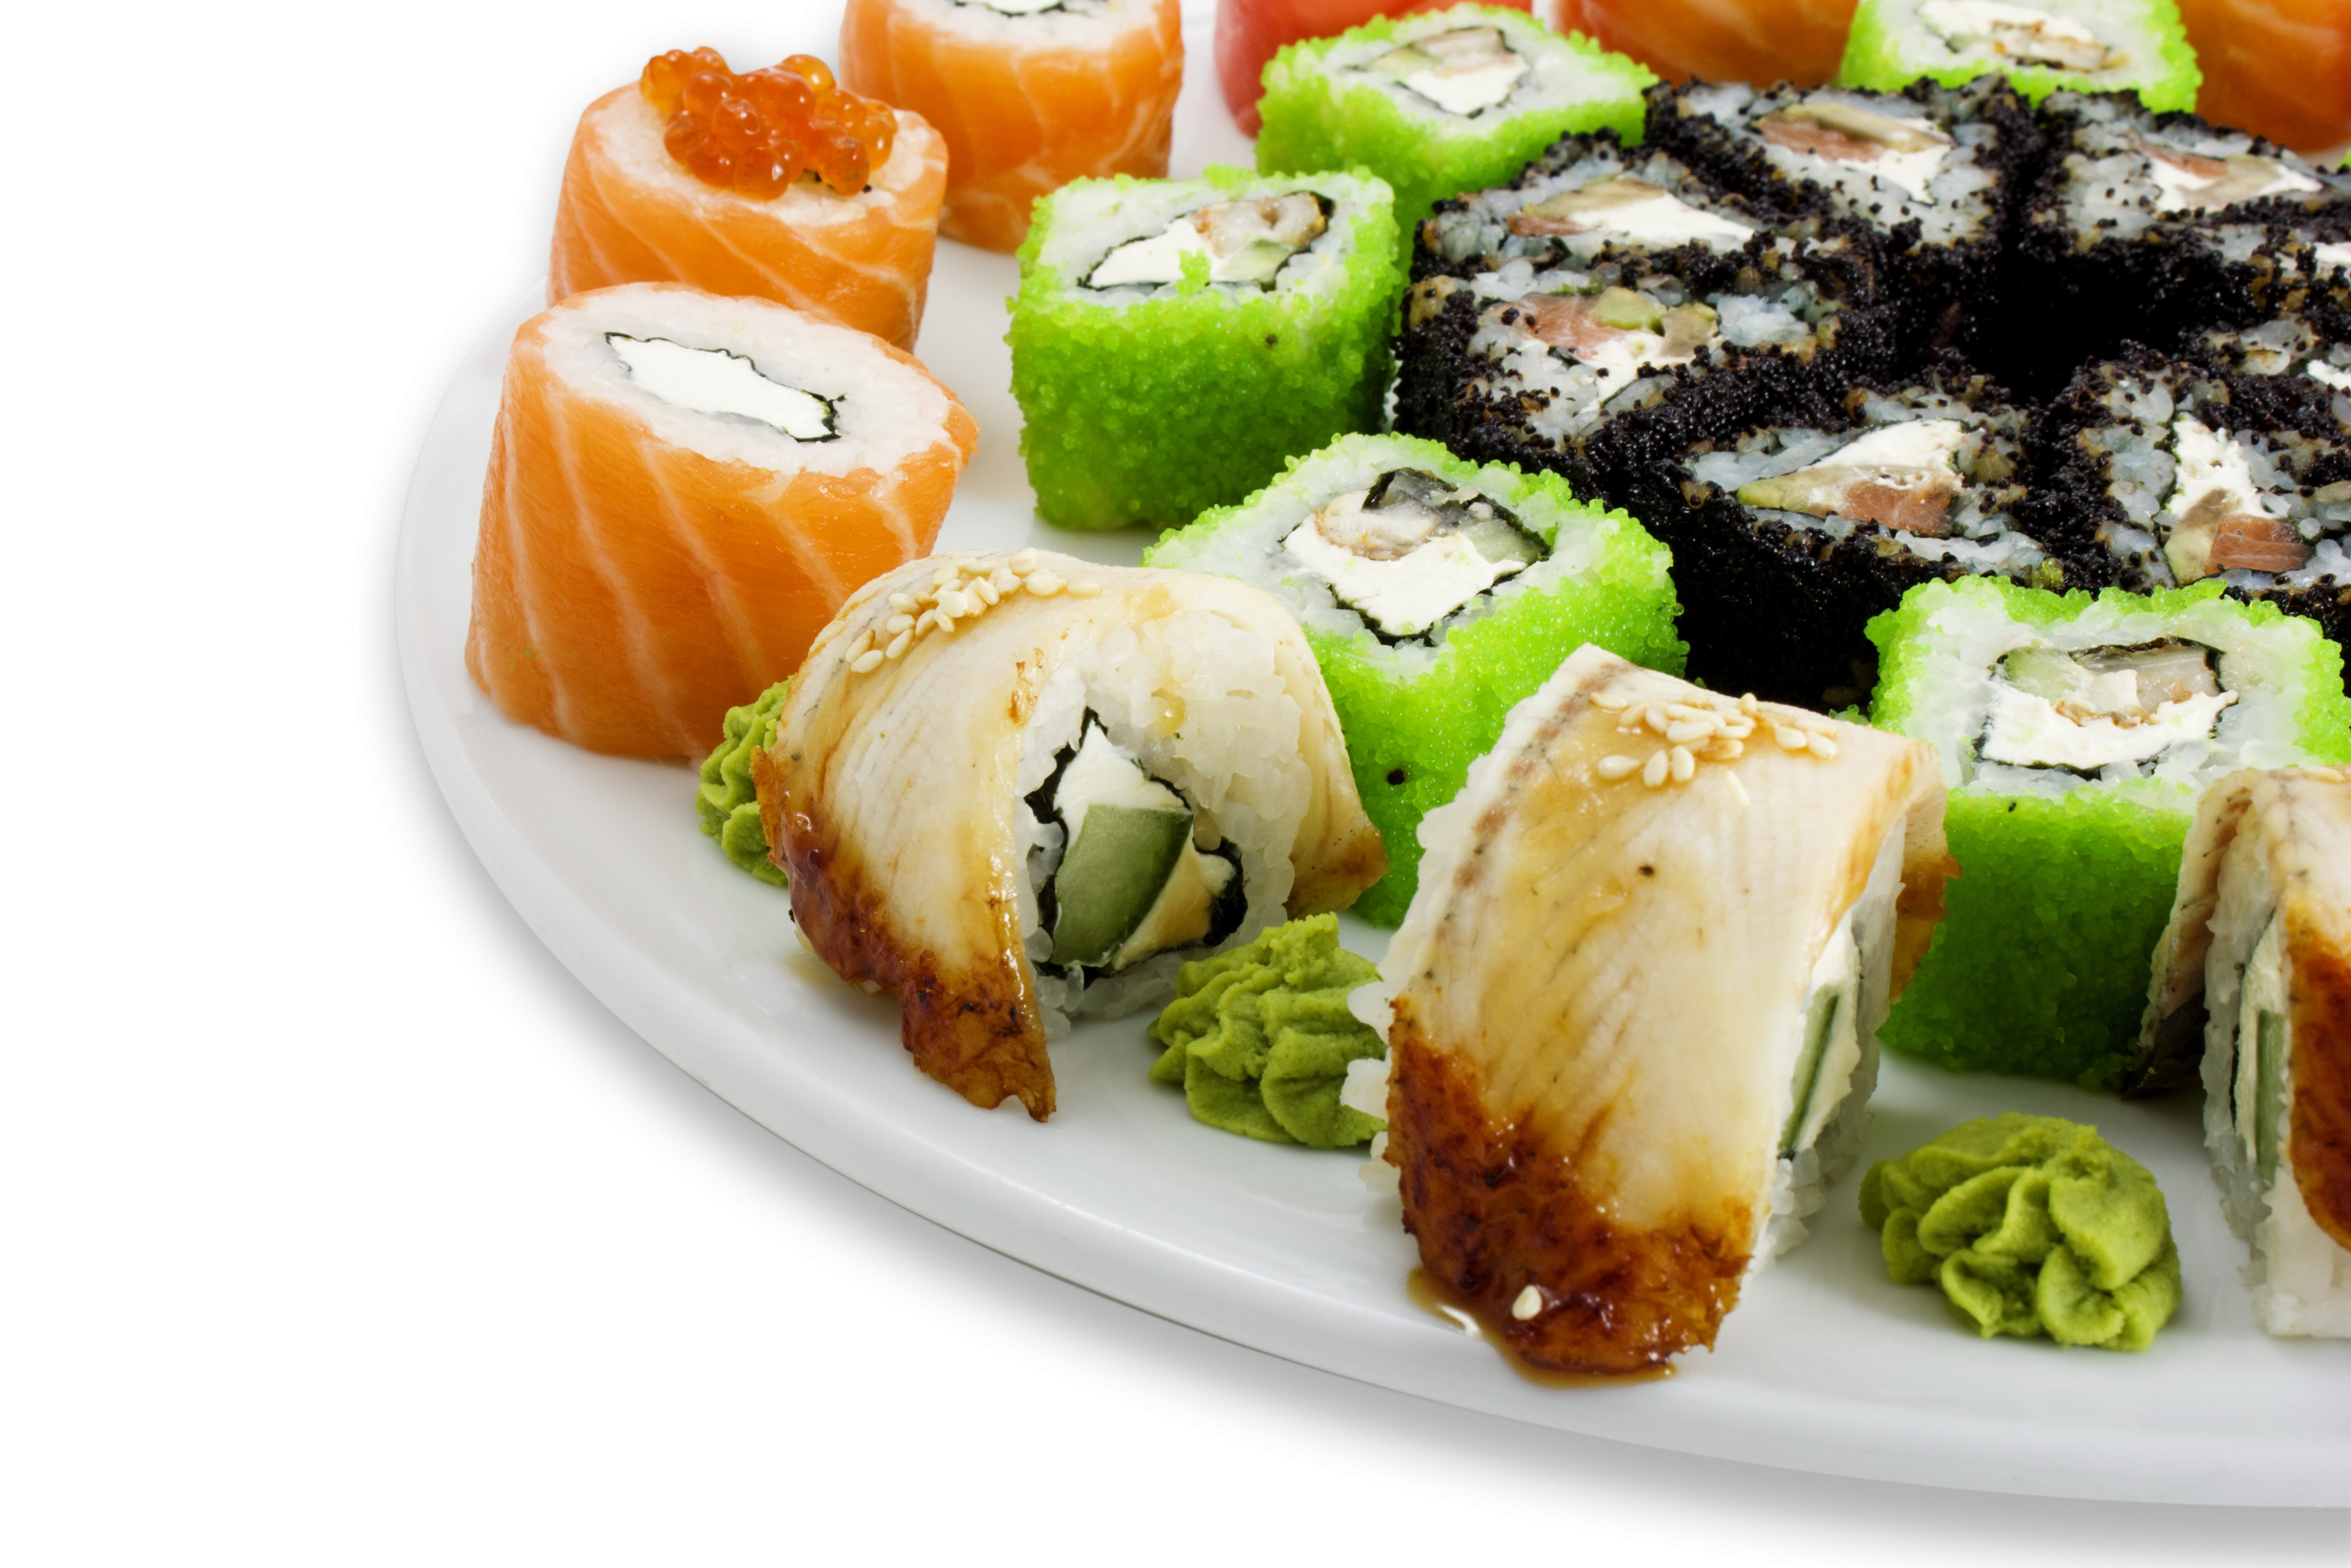 sushi tapete,gericht,essen,sushi,california roll,komfort essen